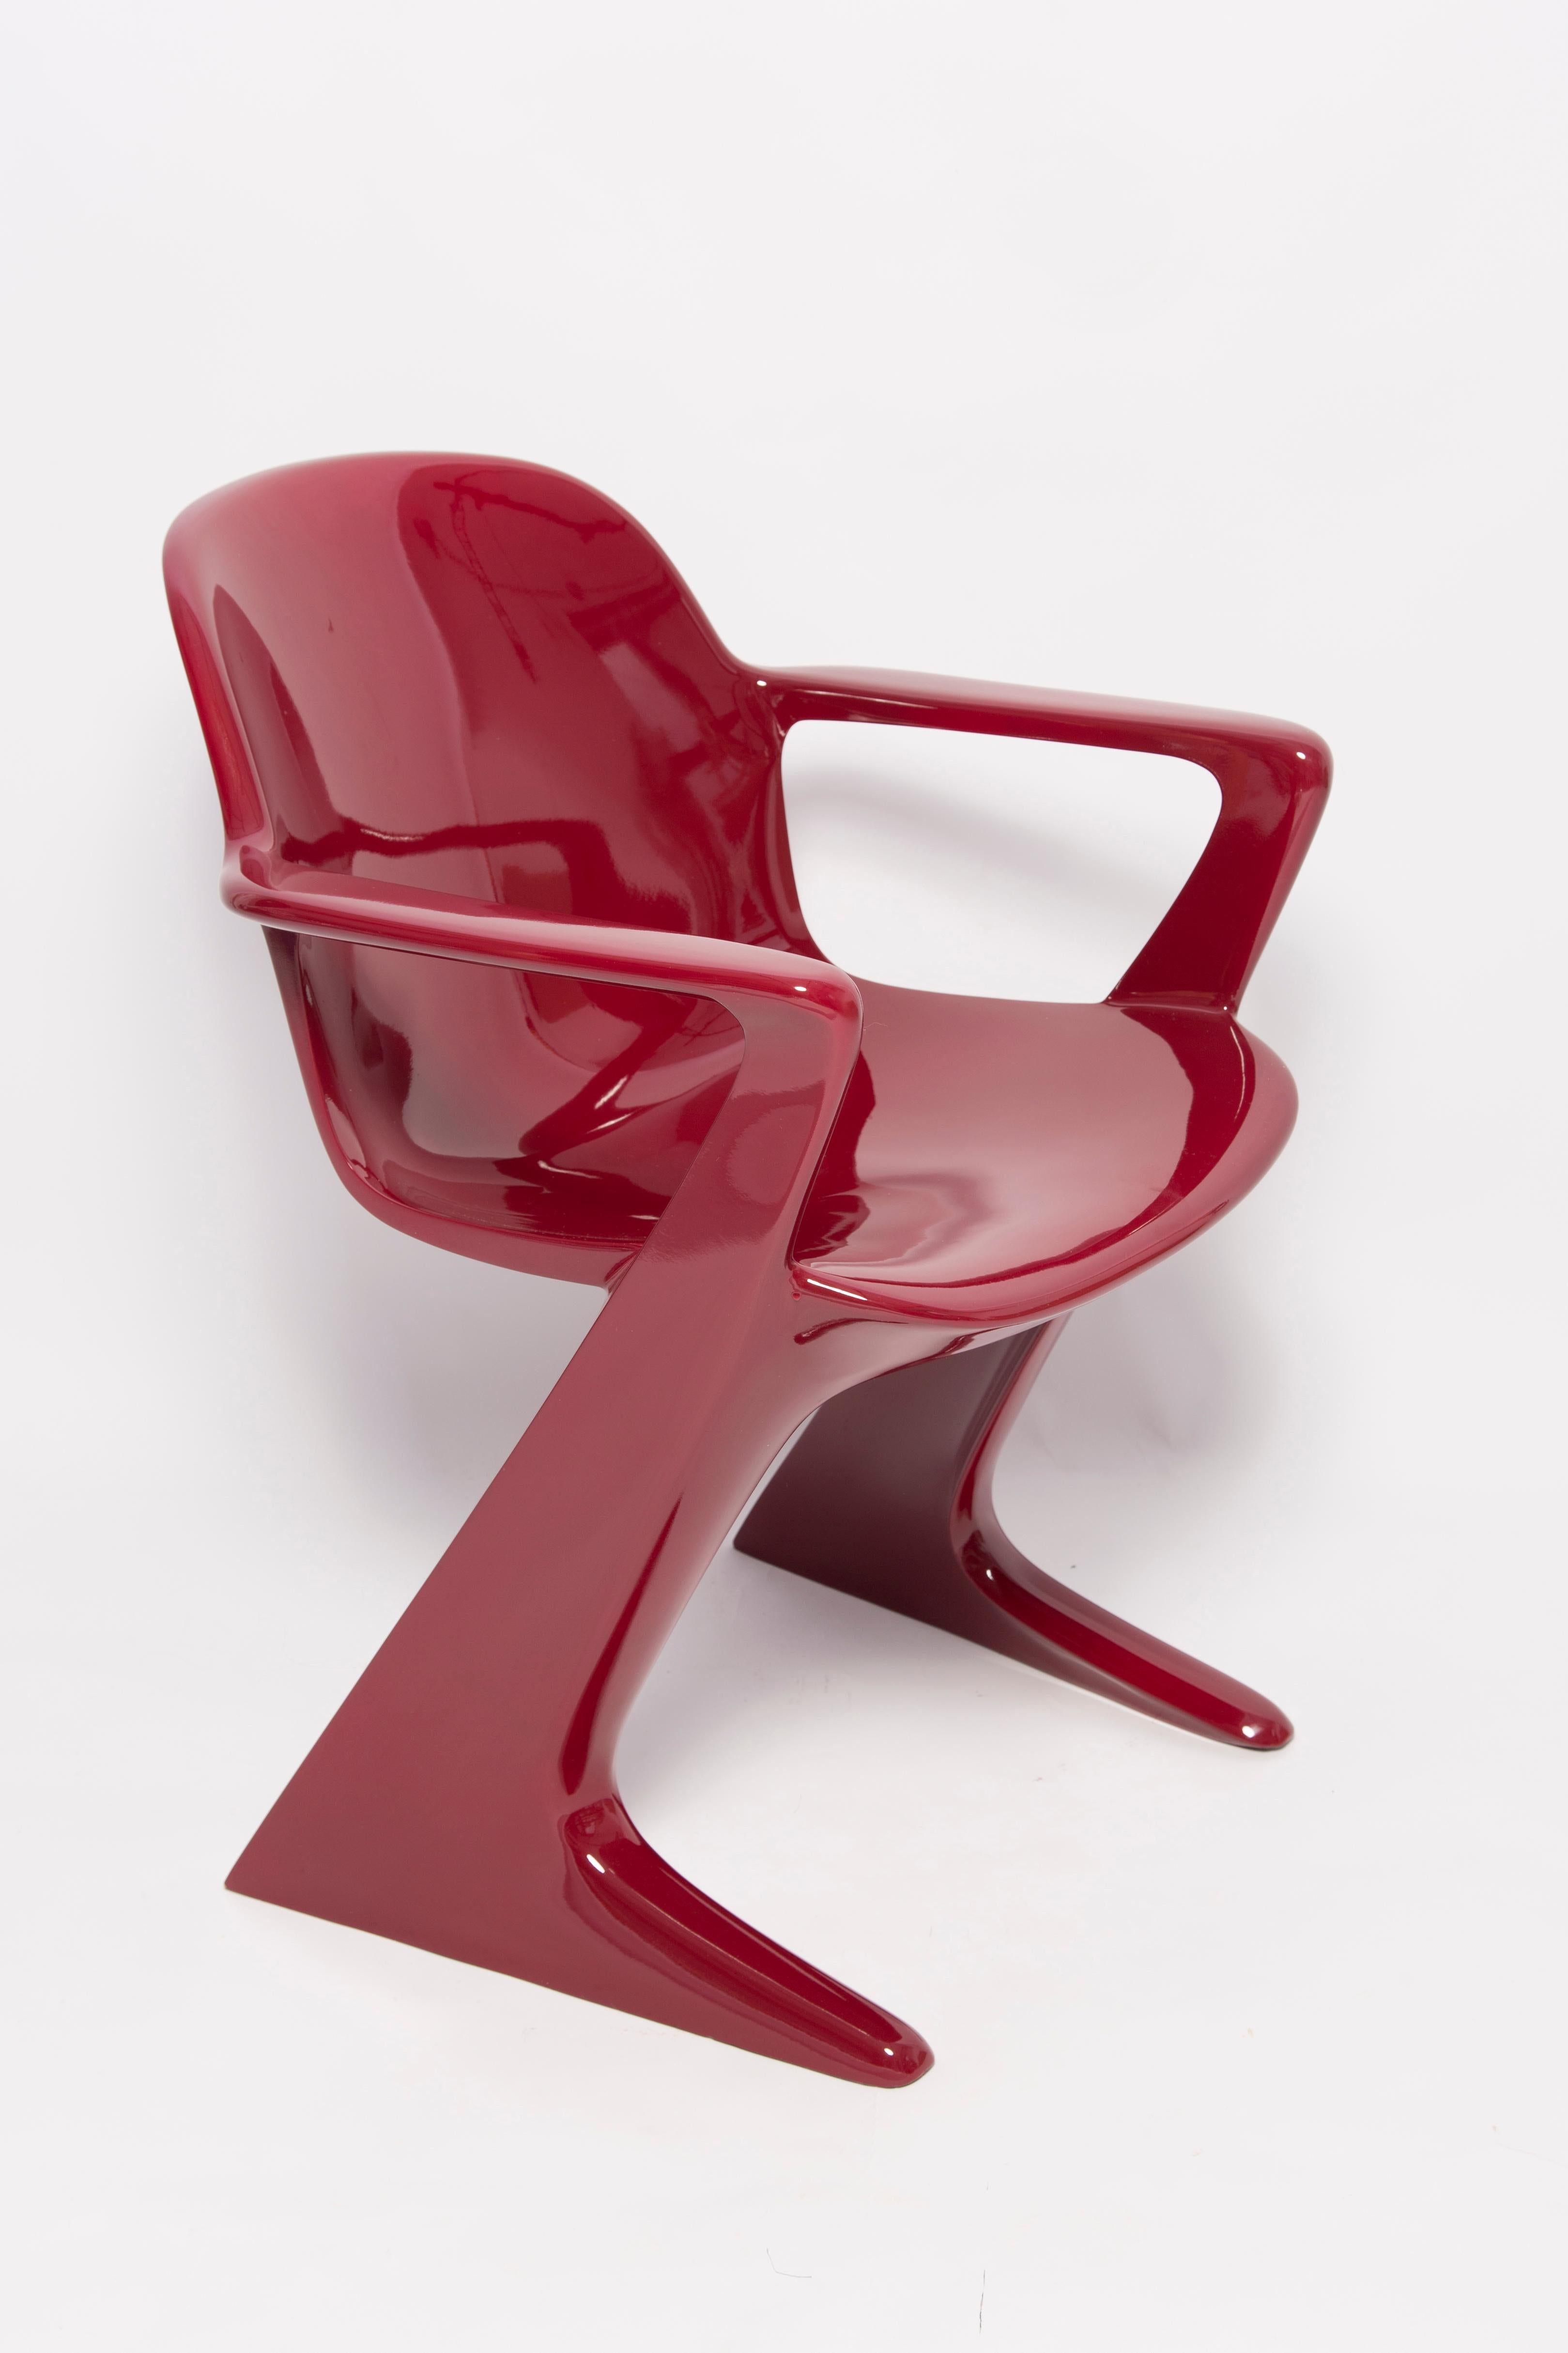 Dieses Modell wird als Z-Stuhl bezeichnet. 1968 in der DDR von Ernst Moeckl und Siegfried Mehl entworfen, deutsche Version des Panton-Stuhls. Auch Känguru-Stuhl oder Variopur-Stuhl genannt. Produziert in Ostdeutschland.

Stuhl ist nach